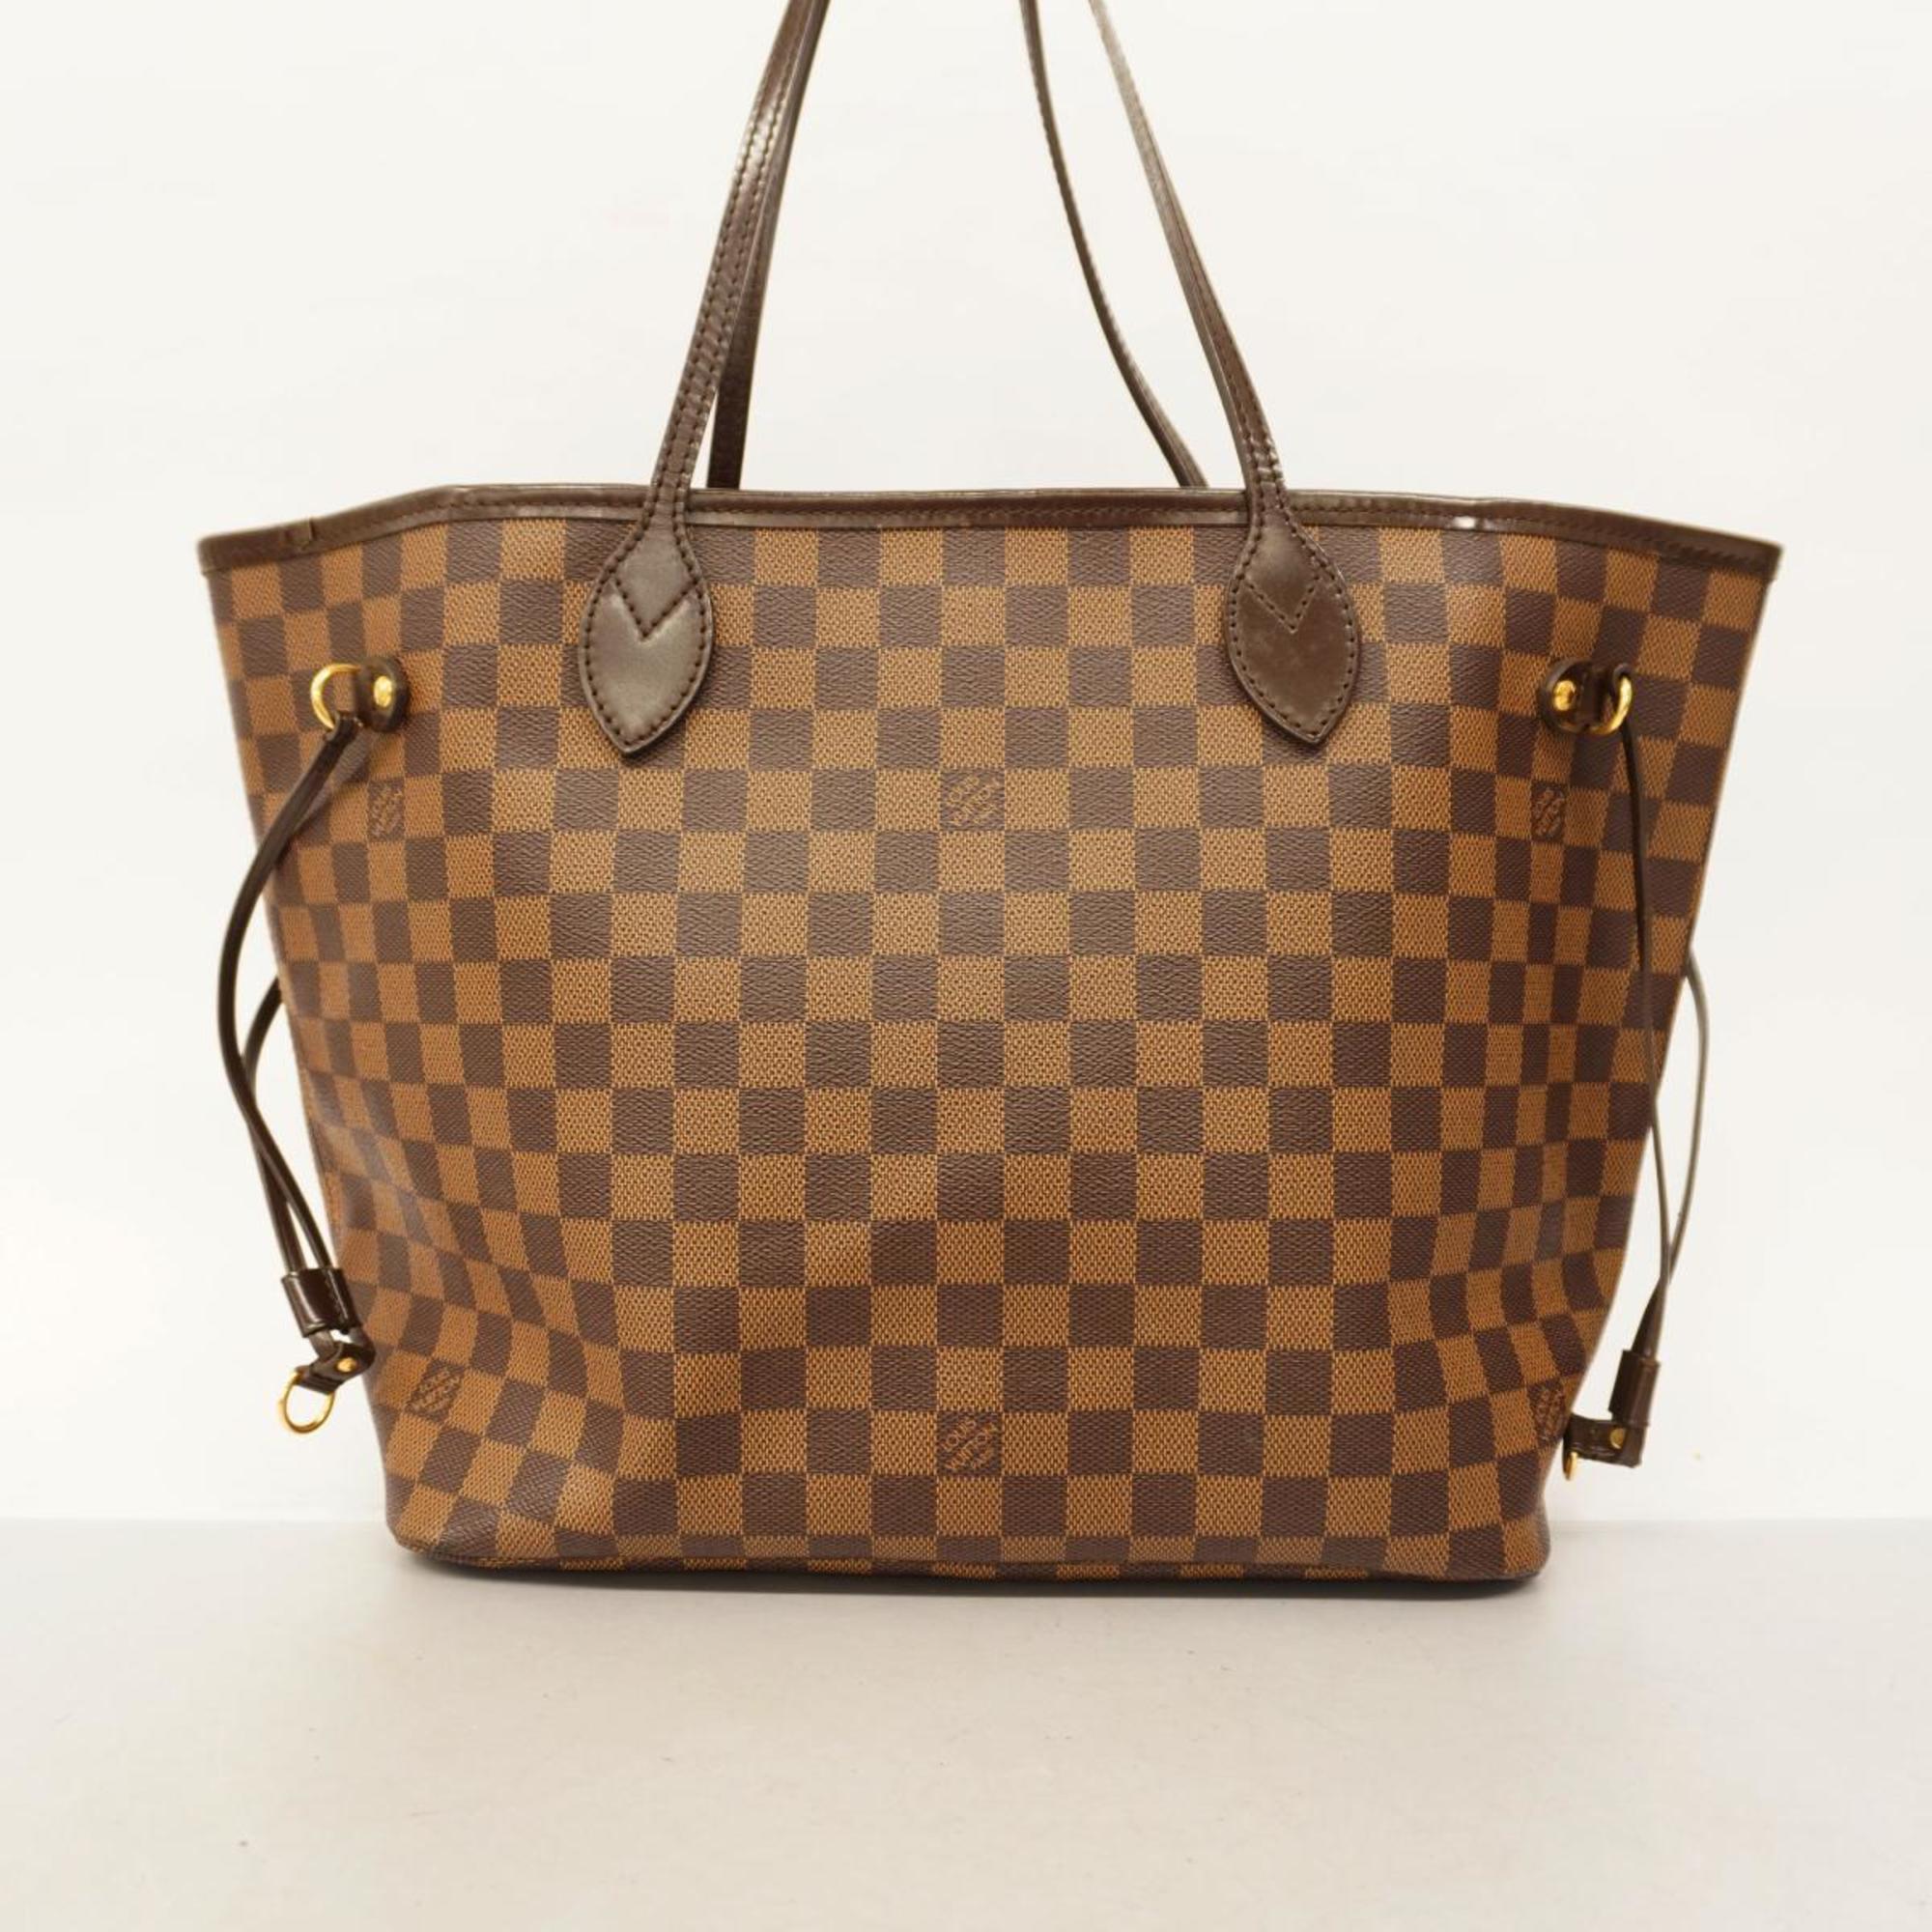 Louis Vuitton Tote Bag Damier Neverfull MM N51105 Ebene Women's